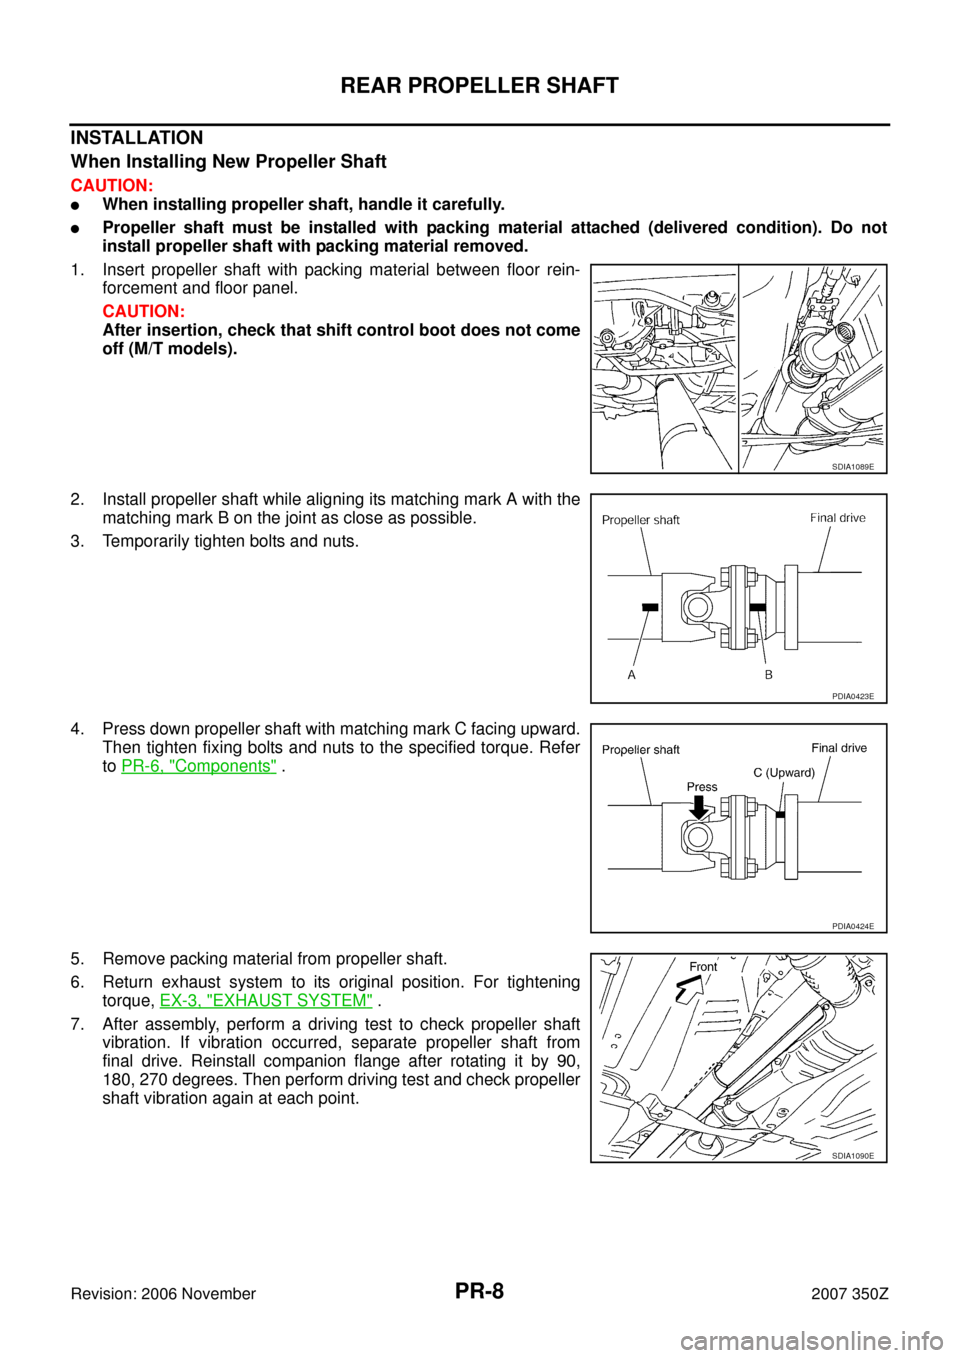 NISSAN 350Z 2007 Z33 Propeller Shaft Workshop Manual PR-8
REAR PROPELLER SHAFT
Revision: 2006 November2007 350Z
INSTALLATION
When Installing New Propeller Shaft
CAUTION:
When installing propeller shaft, handle it carefully.
Propeller shaft must be ins